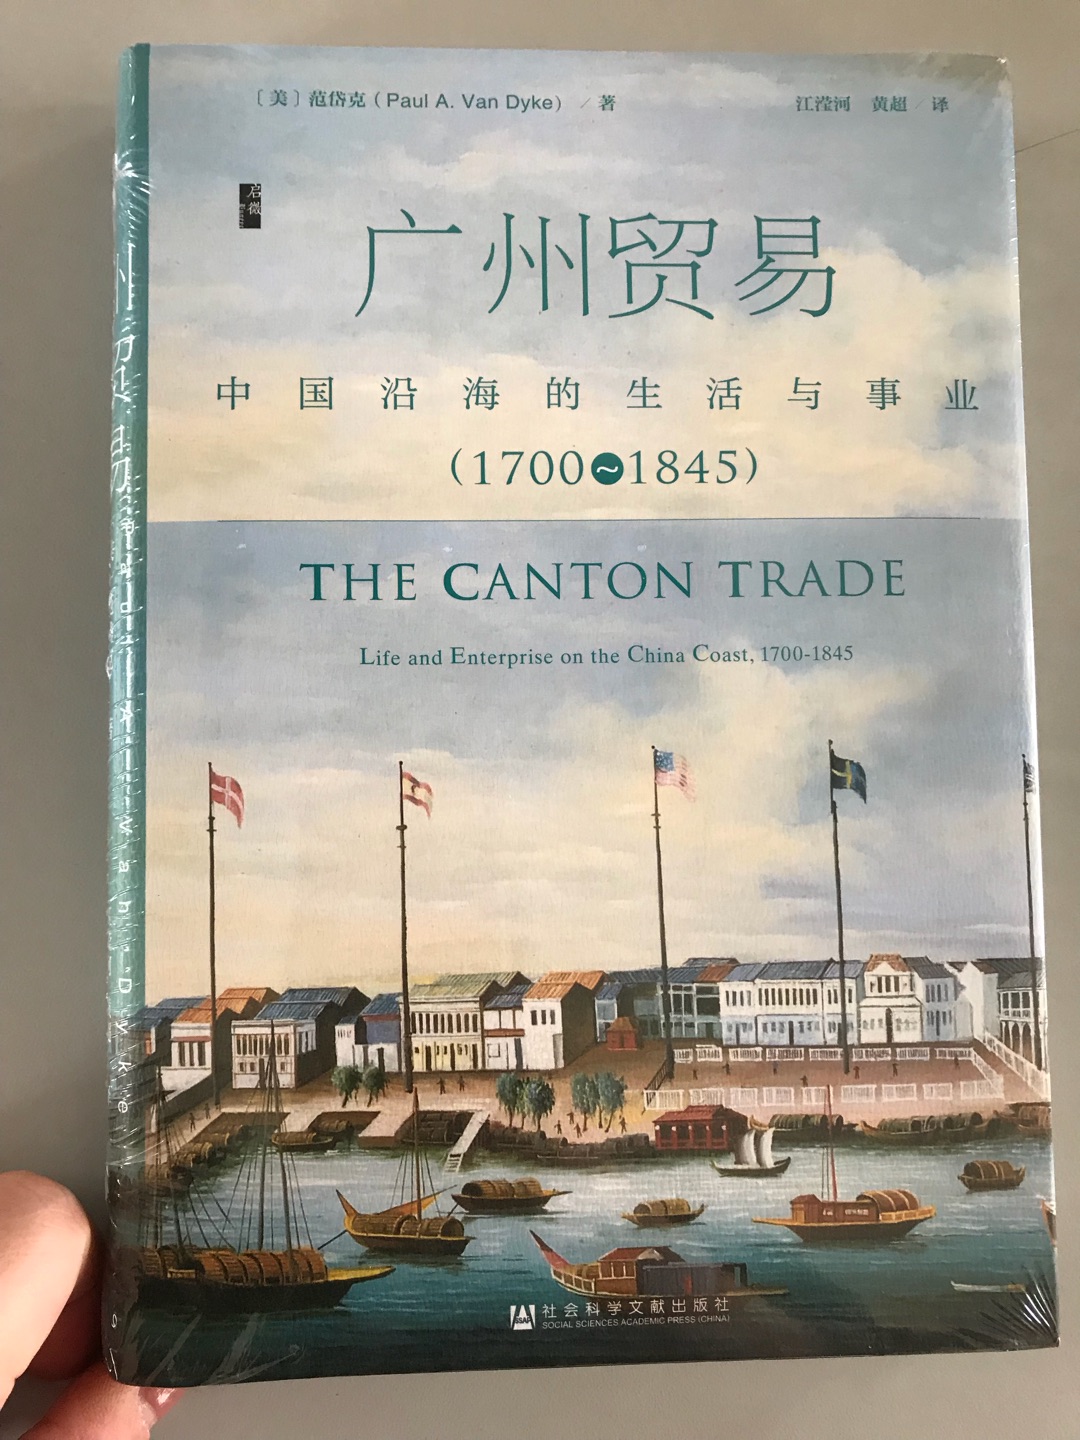 《广州贸易：中国沿海的生活与事业（1700~1845）》清代的大部分时间，广州是中国对外贸易的单一港口。本书利用极为丰富的多语种资料，重建了广州贸易在18~19世纪上半叶的日常运作。它采用自下而上的方法，通过专注于实践和程序，而不是官方政策和协议，重新审视了贸易的成功和失败。作者揭开了所有参与者的日常生活，从引水、买办、通事，到大班、行商和海关官员。本书最后对广州贸易体制的反思极为深刻。全书论证透彻严密，翻译语言精练流畅，可读性强，是一部了解清代对外贸易的经典著作。